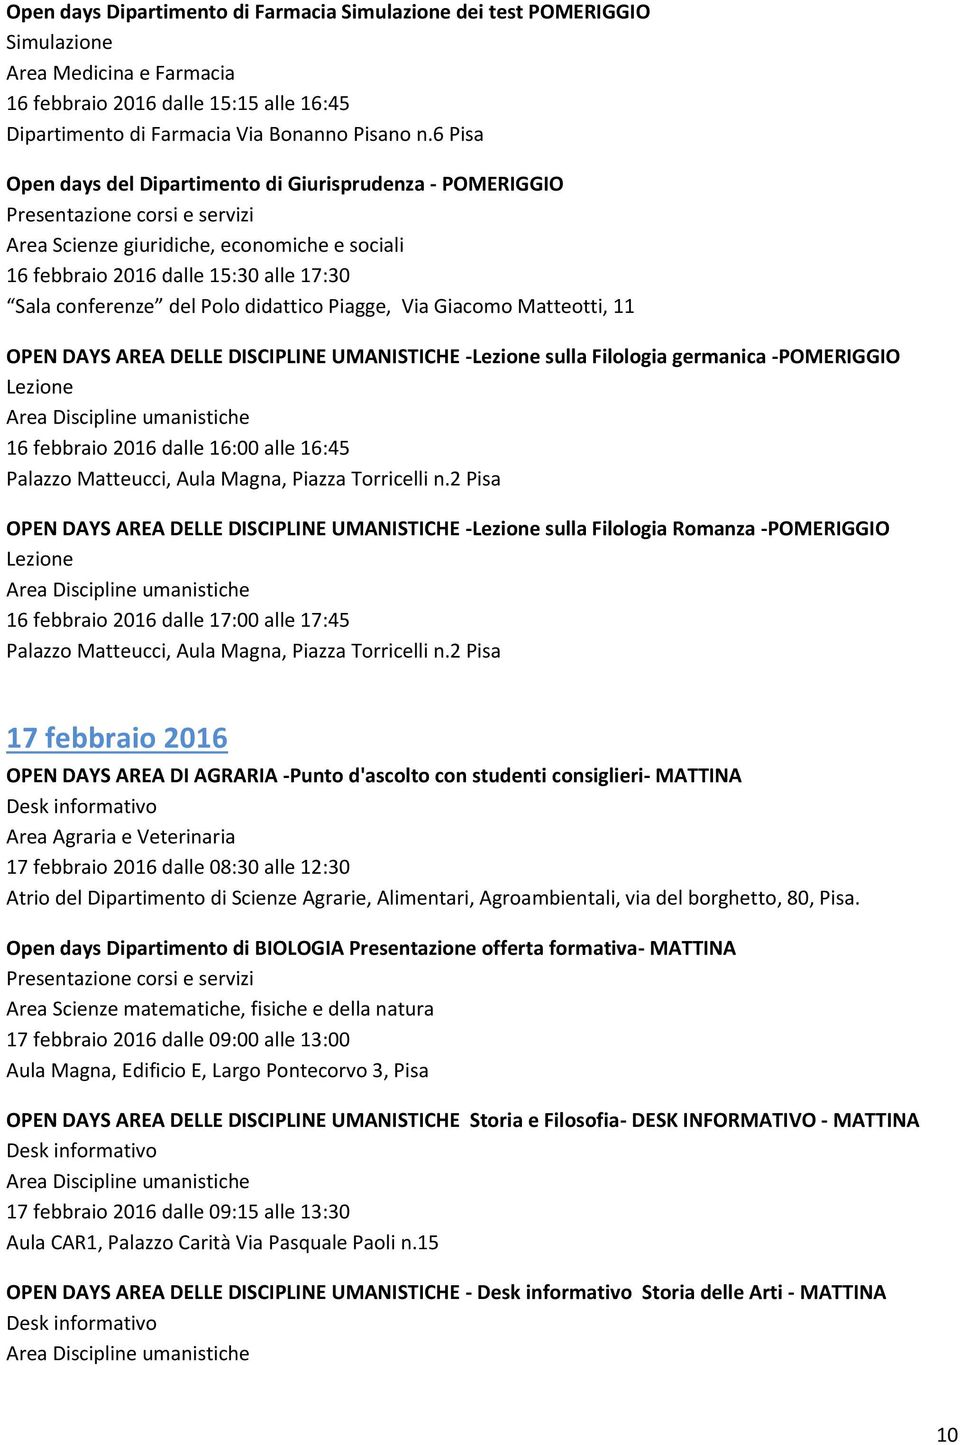 DISCIPLINE UMANISTICHE - sulla Filologia germanica -POMERIGGIO 16 febbraio 2016 dalle 16:00 alle 16:45 OPEN DAYS AREA DELLE DISCIPLINE UMANISTICHE - sulla Filologia Romanza -POMERIGGIO 16 febbraio